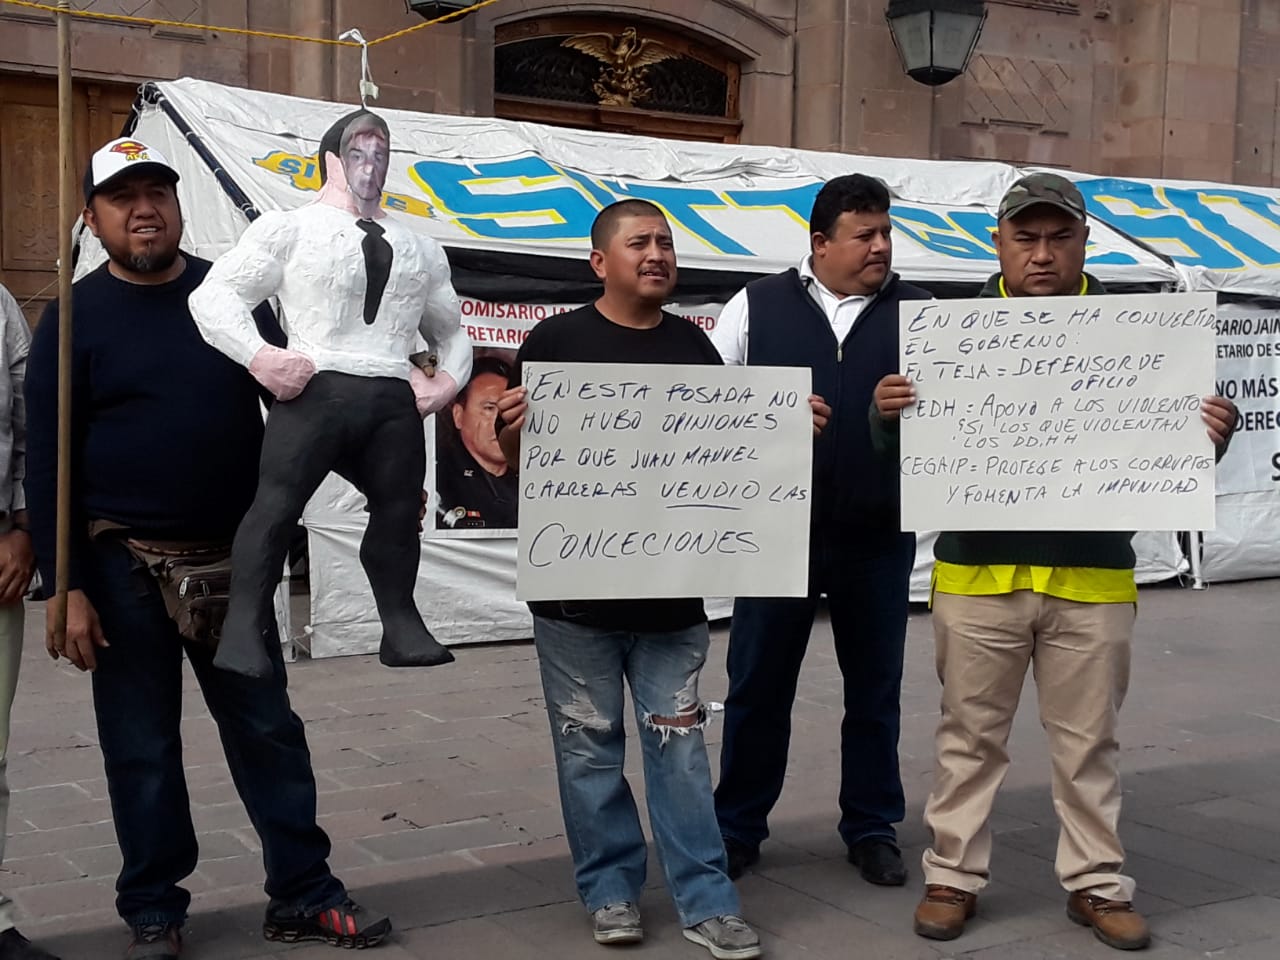  Taxistas cuelgan piñata con cara del gobernador frente a Palacio de Gobierno; piden su renuncia